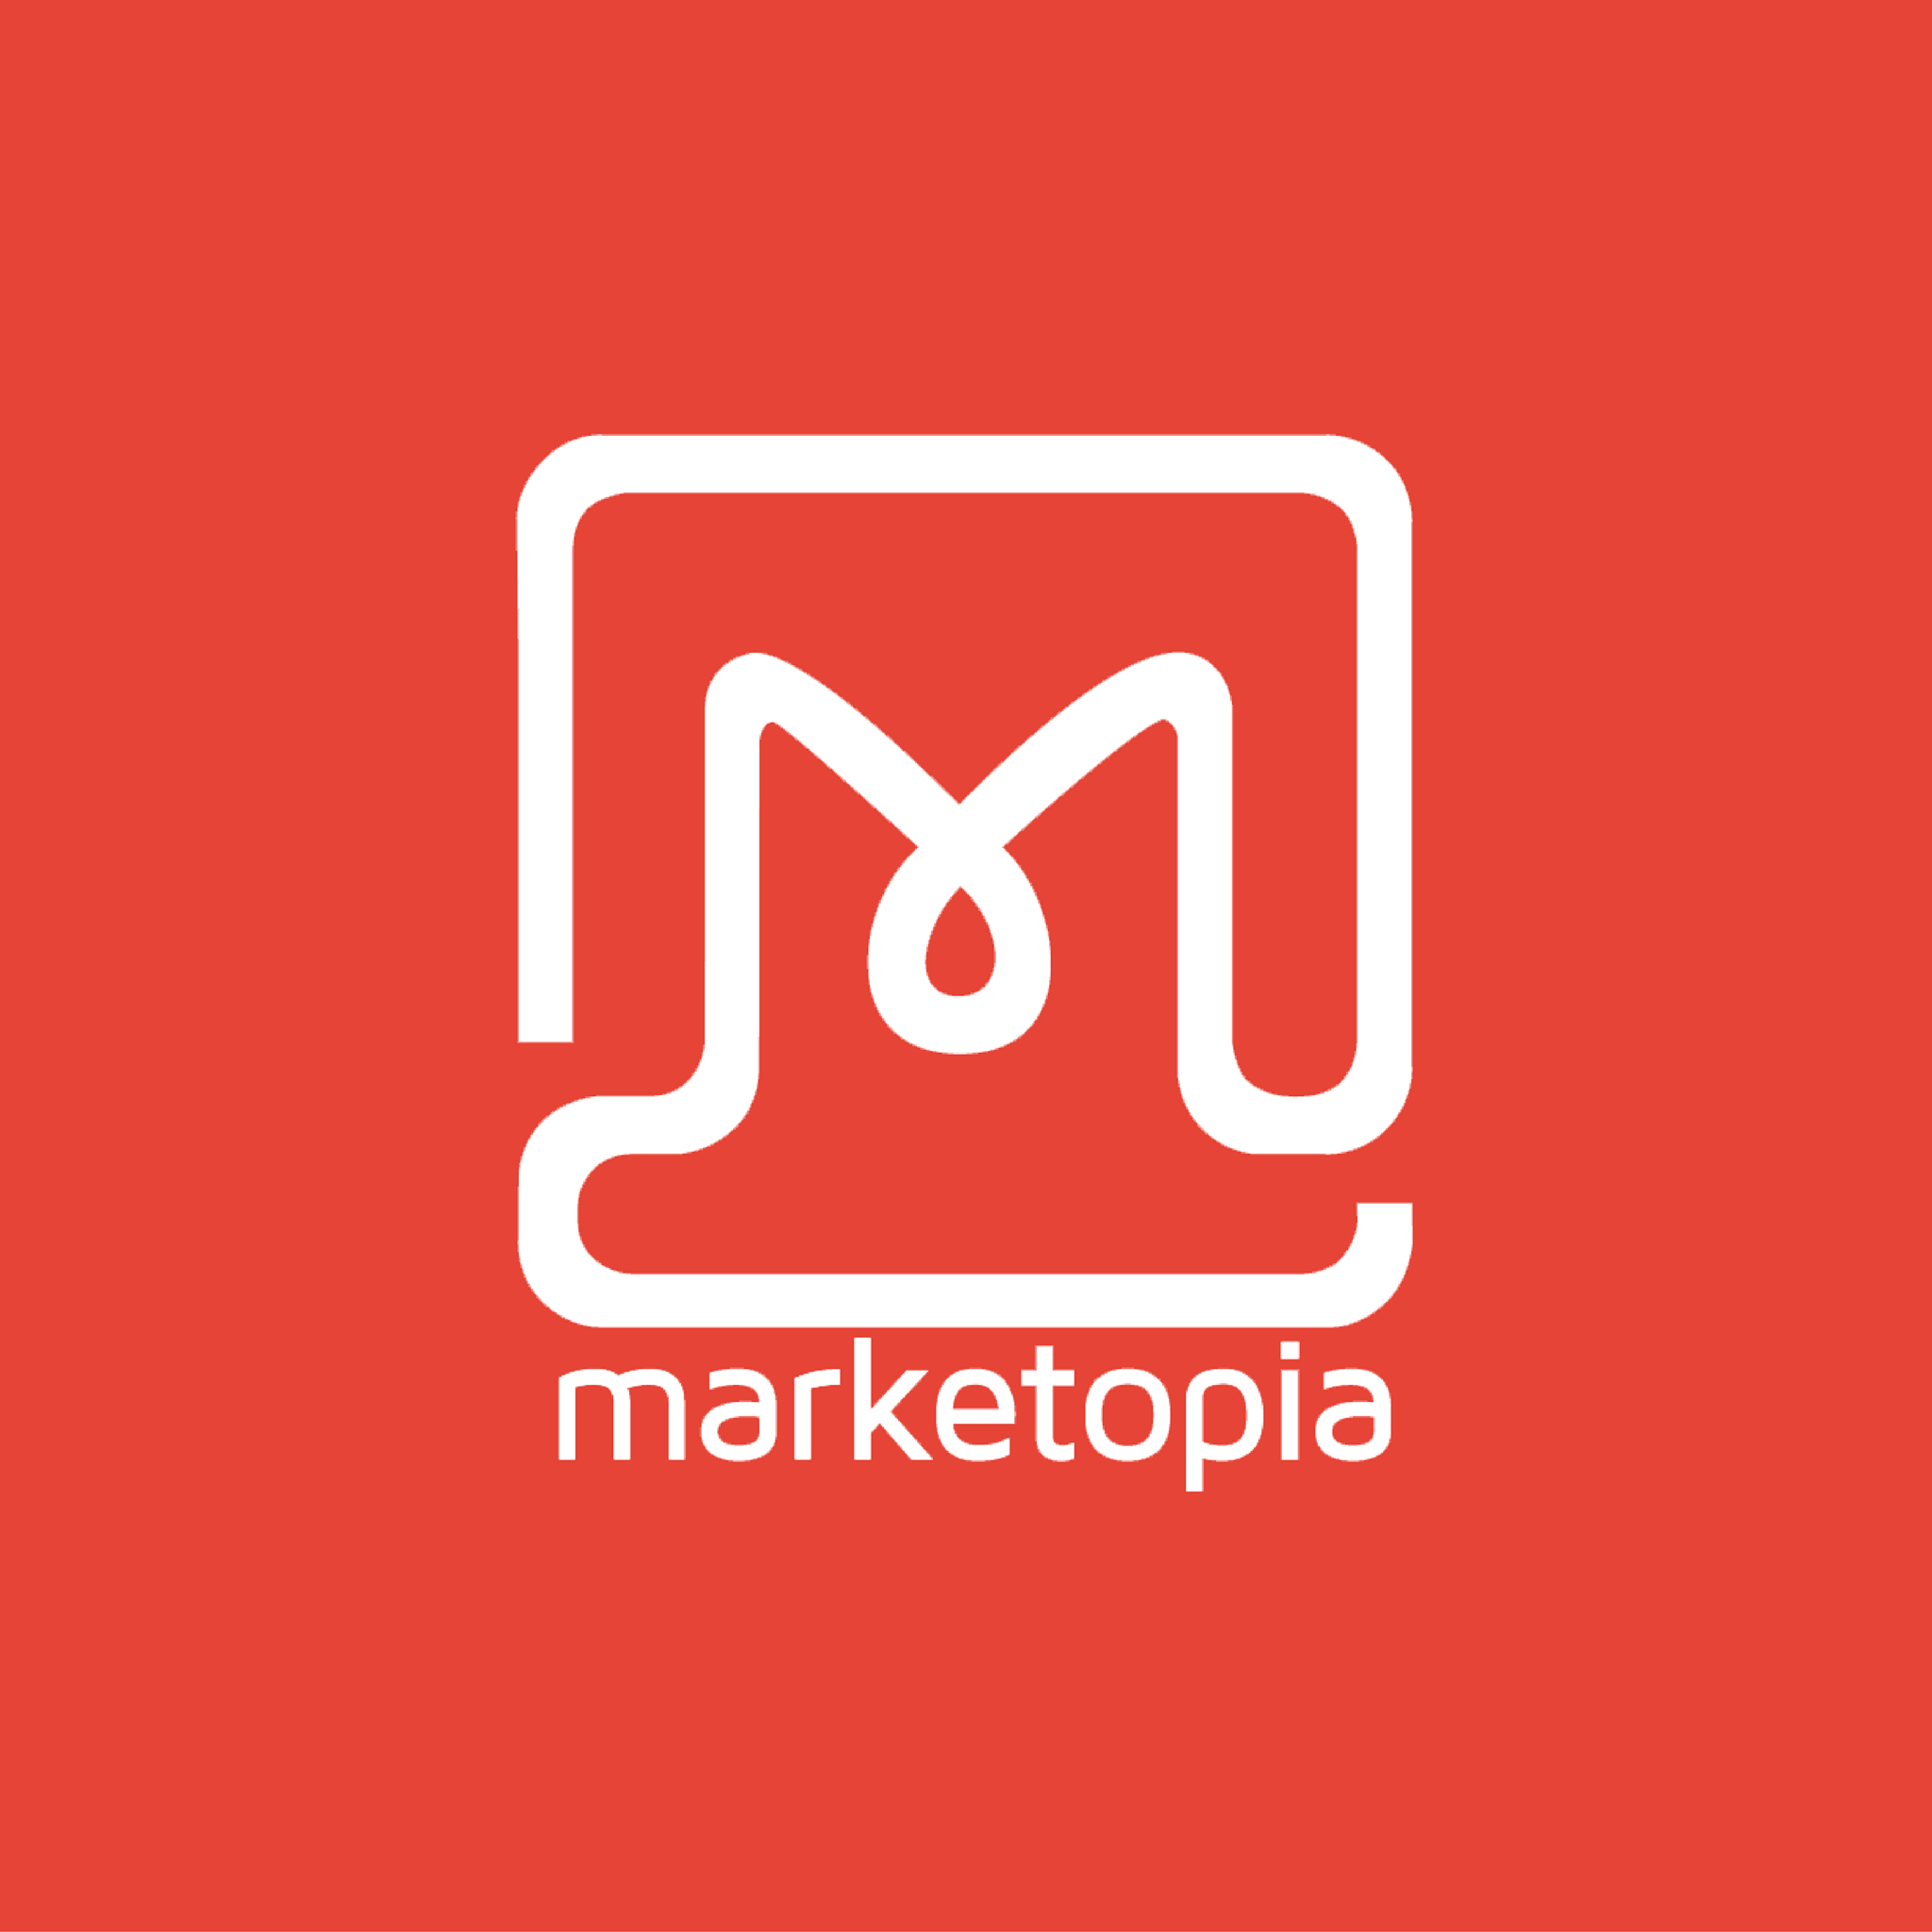 Marketopia